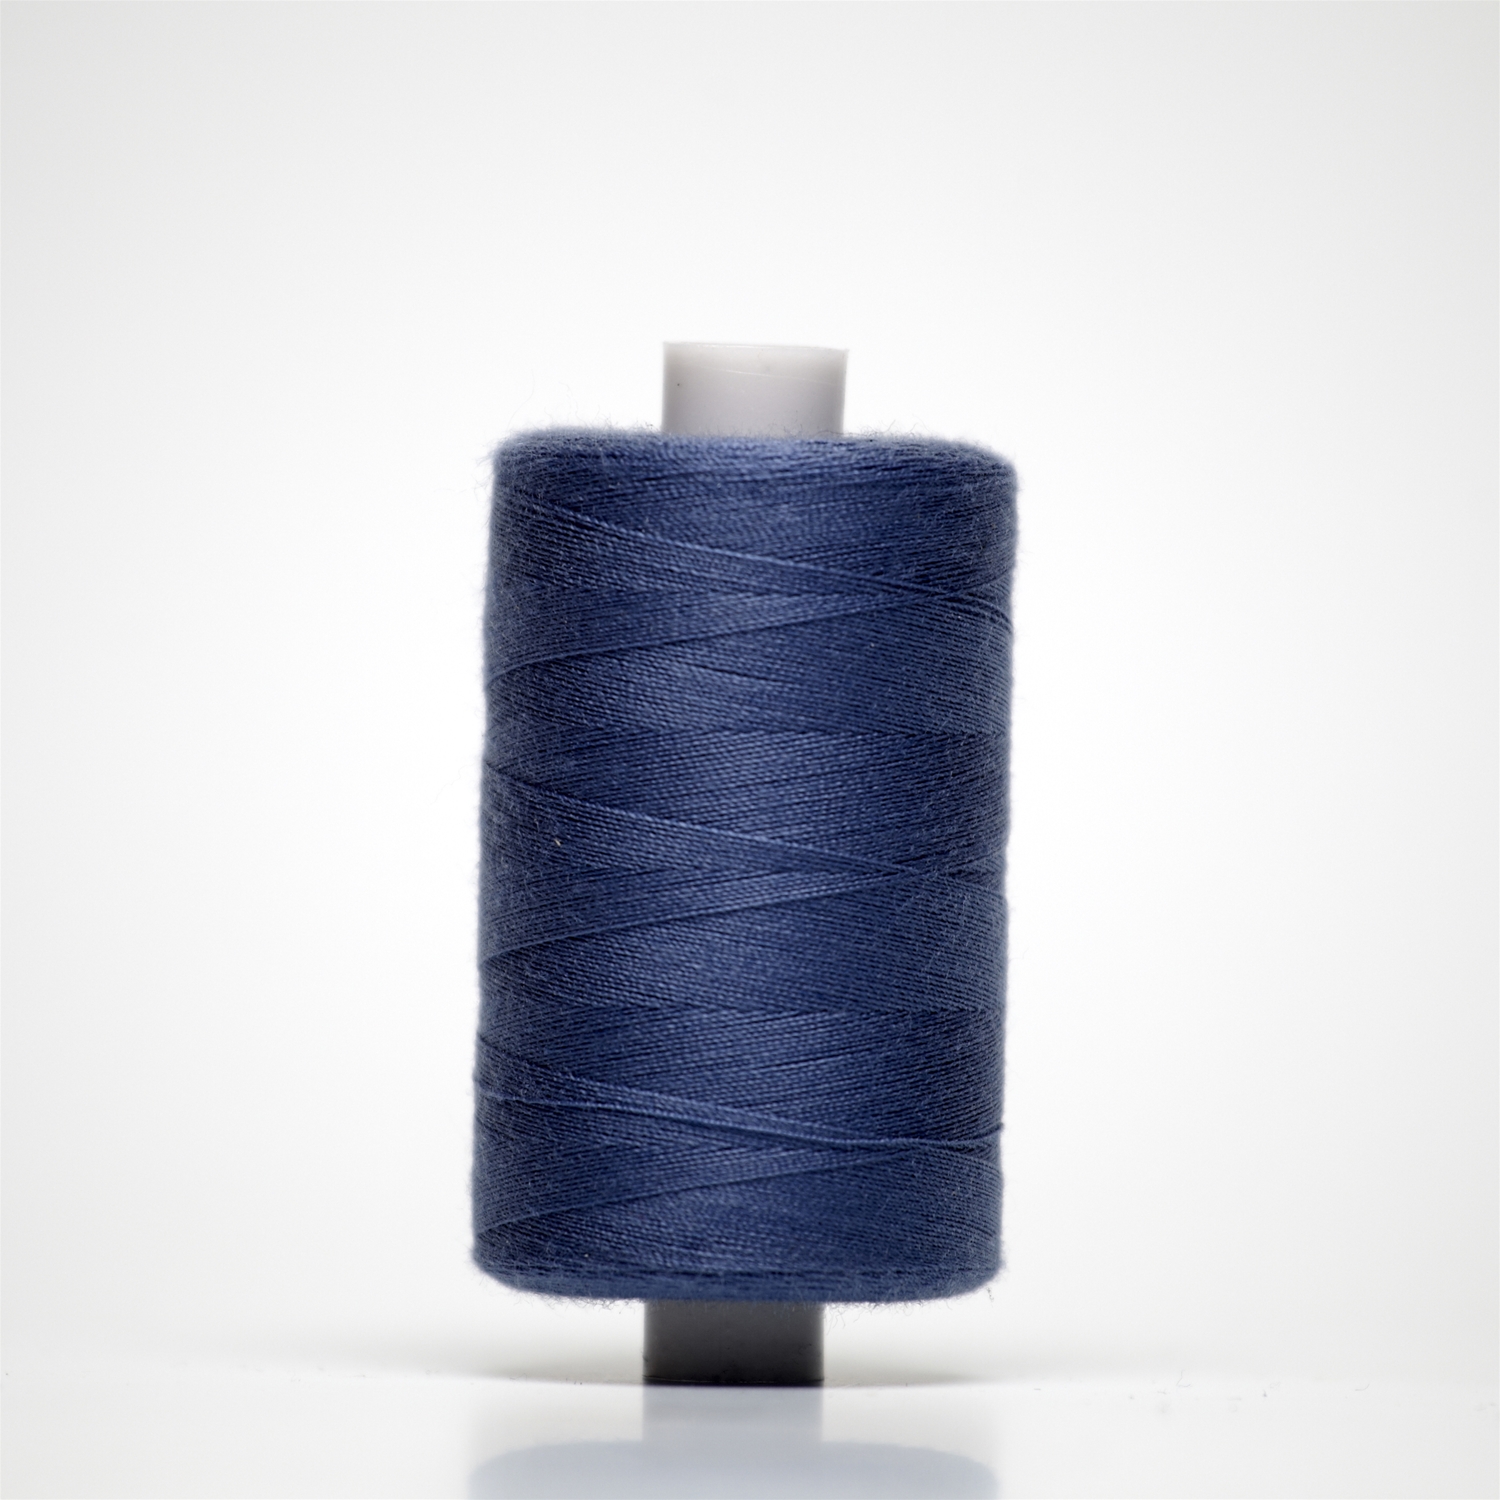 35029 | 1000y Budget Sewing Thread